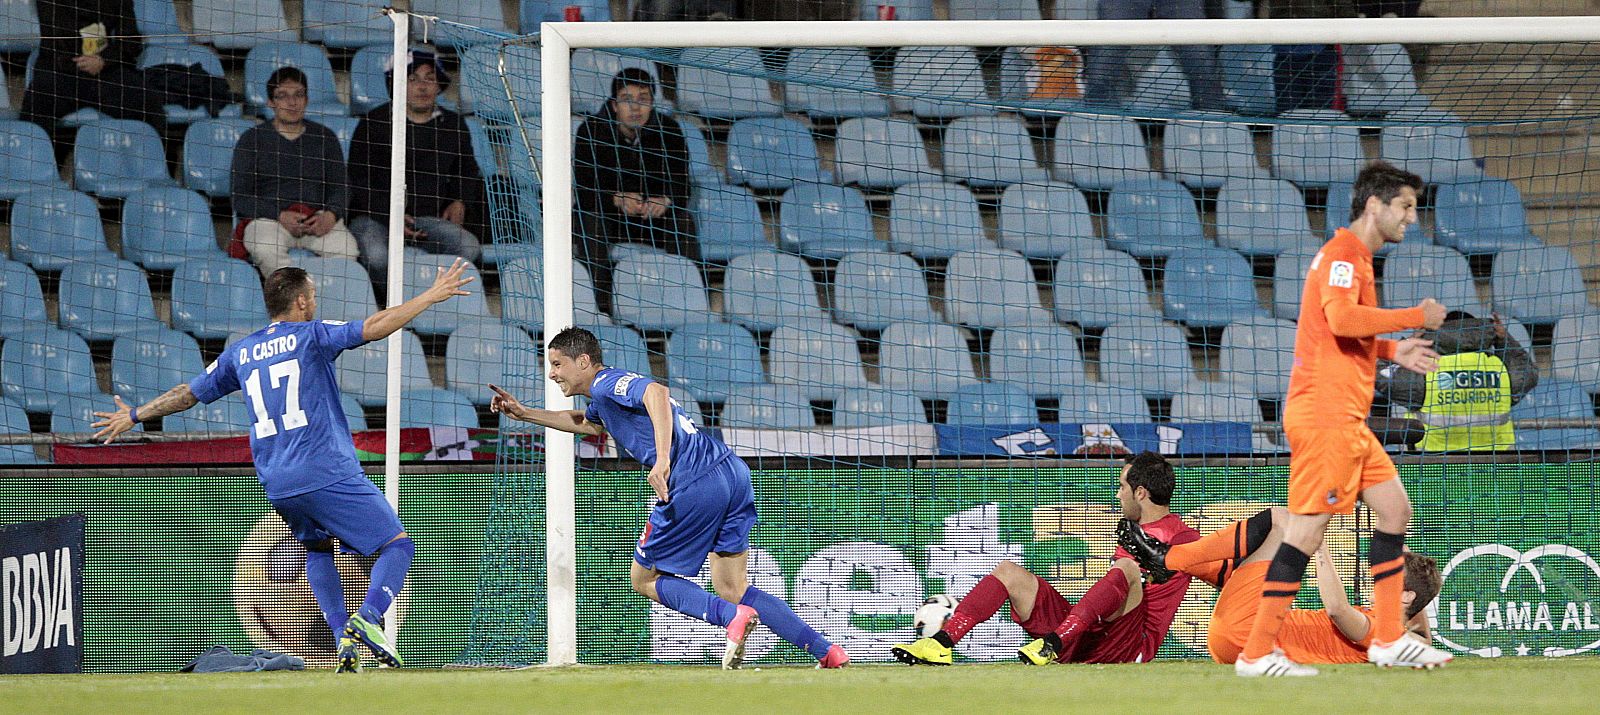 Segundo gol del Getafe, obra de Abdelaziz Barrada, que da la victoria al equipo azulón frente a la Real Sociedad